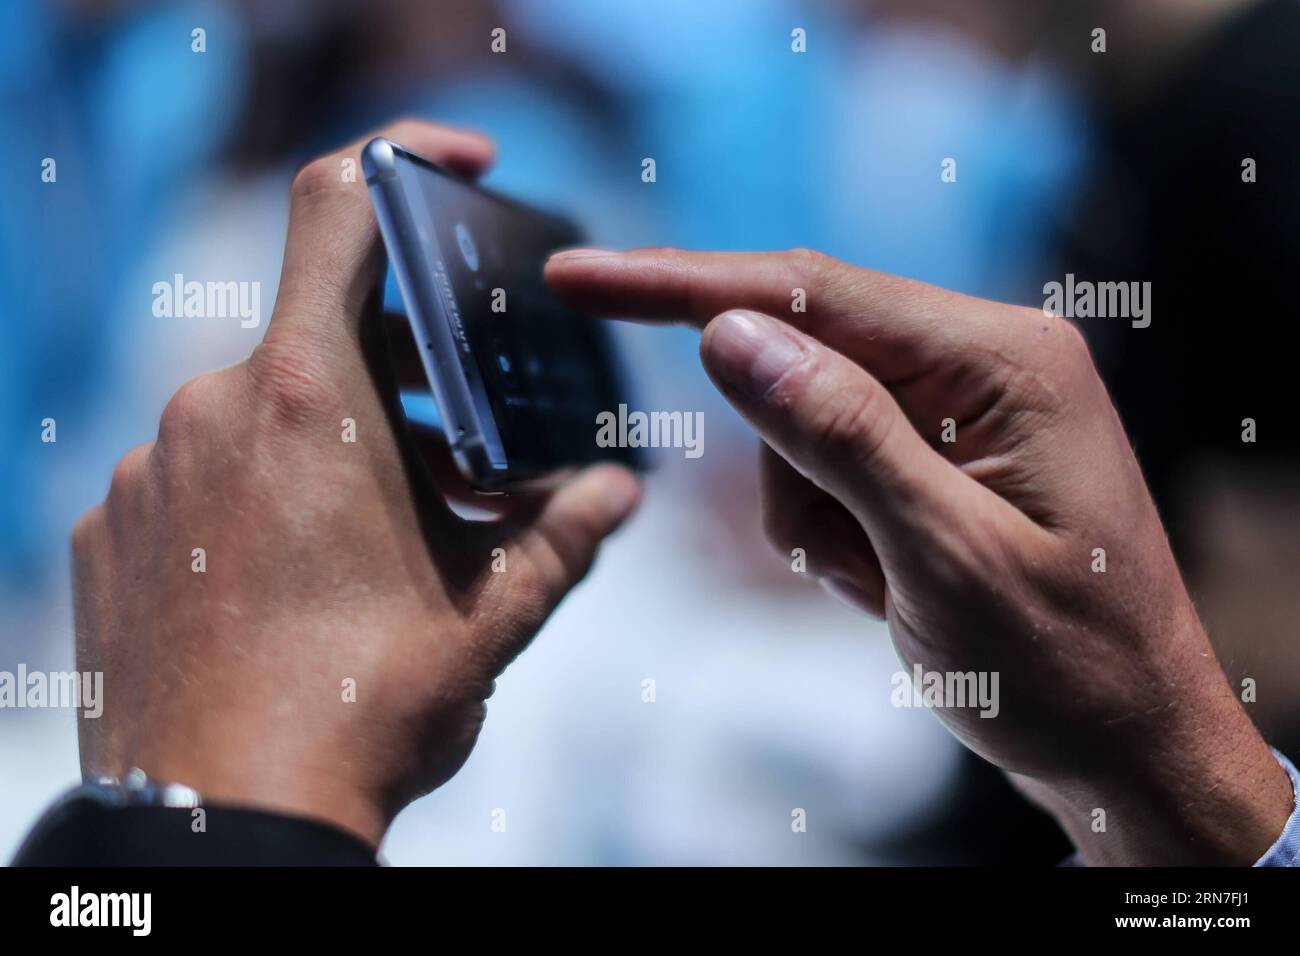 (150904) -- BERLIN, 4 septembre 2015 -- Un visiteur voit un smartphone Samsung Galaxy Note 5 sur le stand Samsung du 55e salon IFA de l'électronique grand public à Berlin, Allemagne, le 4 septembre 2015. Alors que le 55e salon IFA de l électronique grand public, le plus grand salon européen de l électronique grand public et de l électroménager, a débuté vendredi à Berlin, China Brand Show a également tenu sa première cérémonie d ouverture à l IFA. ALLEMAGNE-BERLIN-IFA SALON DE L'ÉLECTRONIQUE GRAND PUBLIC ZhangxFan PUBLICATIONxNOTxINxCHN 150904 Berlin sept 4 2015 un visiteur voit un smartphone Samsung Galaxy Note 5 SUR le stand Samsung S du 55e salon IFA Consumer Electronic Banque D'Images